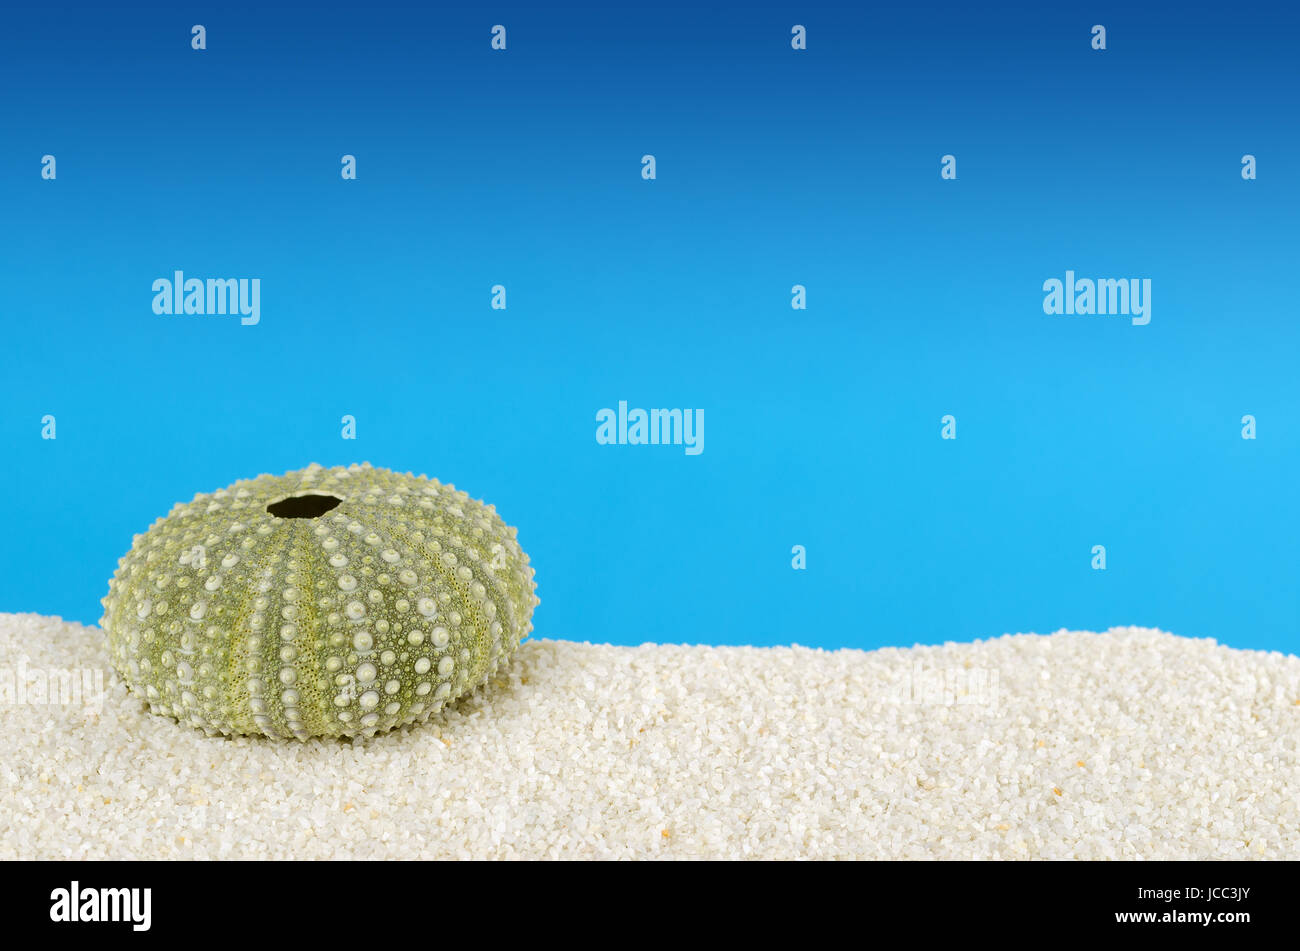 Zwei grüne Seeigel Muscheln auf weißem Sand mit blauem Hintergrund. Seeigel, auch Meer Igel mit kugelförmigen Endoskelett namens Test. Stockfoto